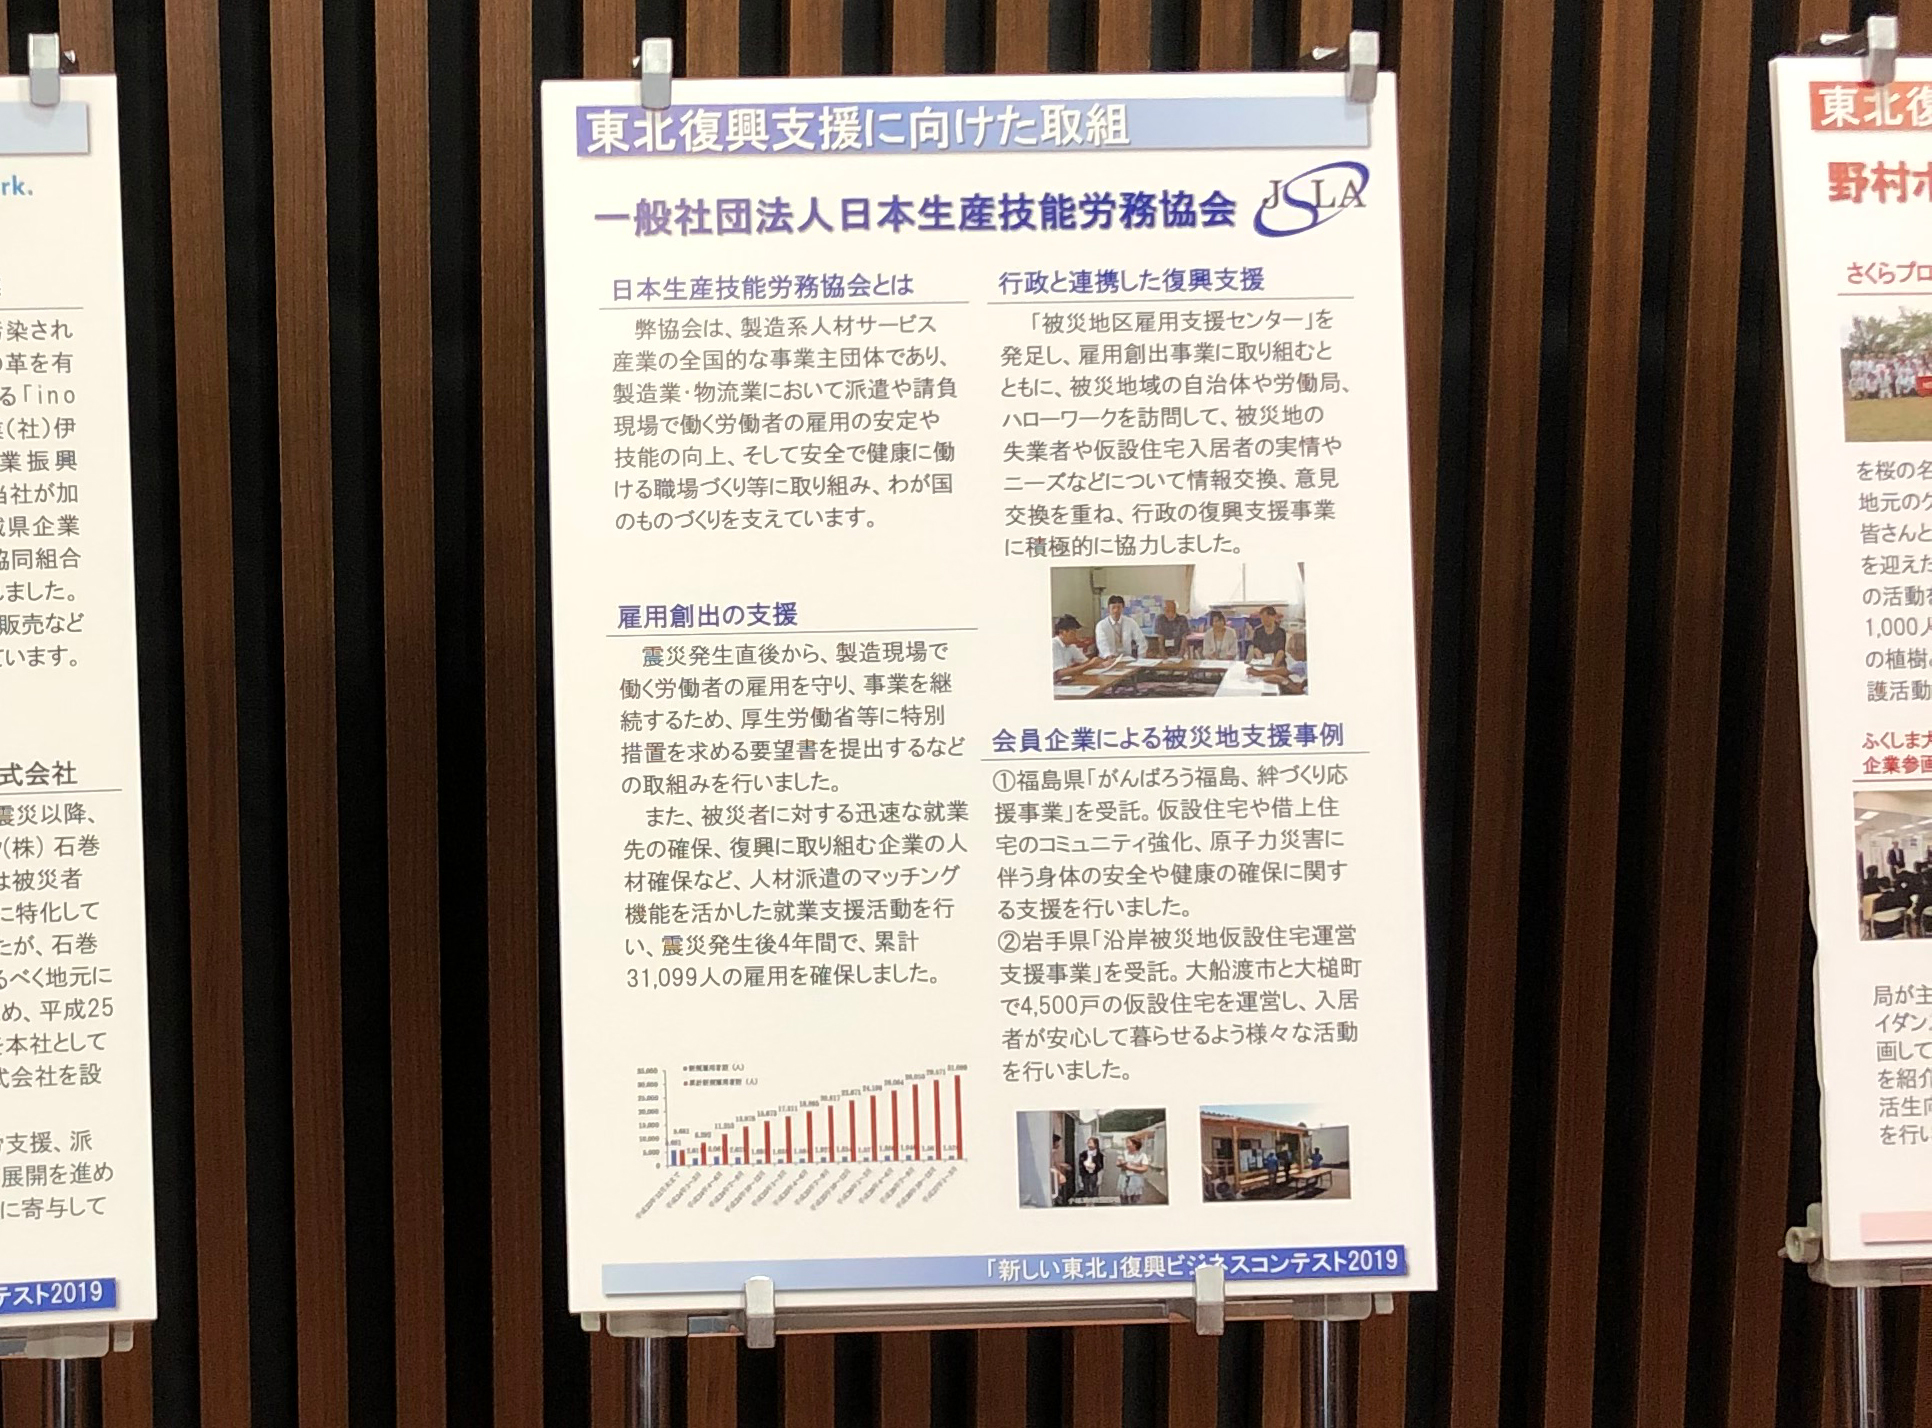 一般社団法人日本BPO協会の防災・減災推進室